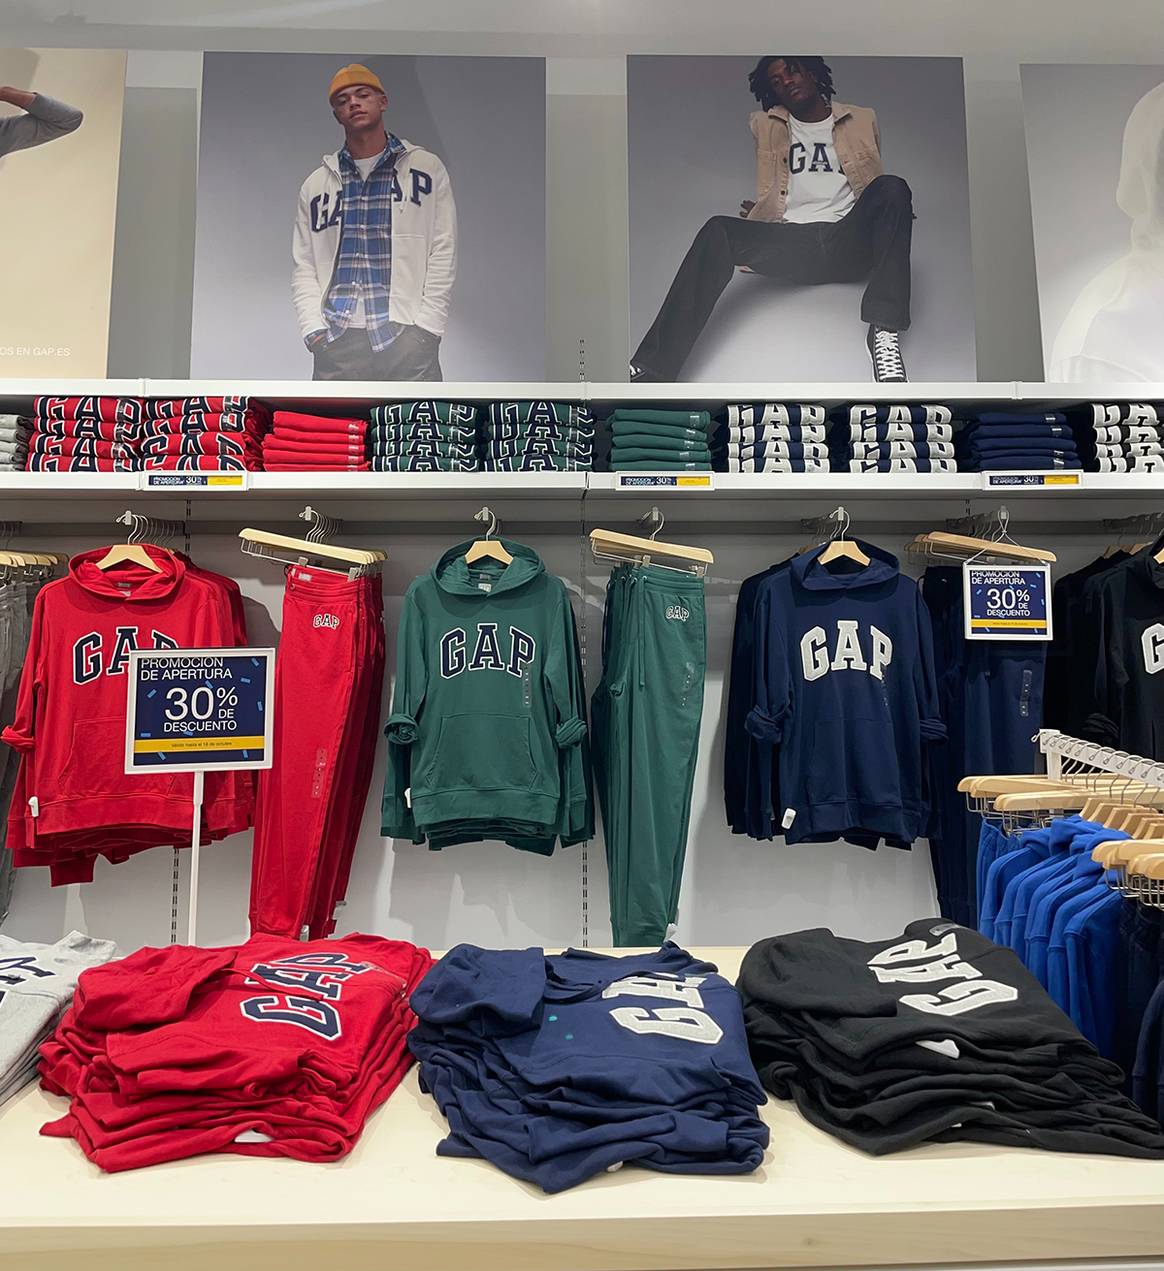 Photo Credits: Nueva tienda de Gap en el cetro comercial La Gavia de Madrid.